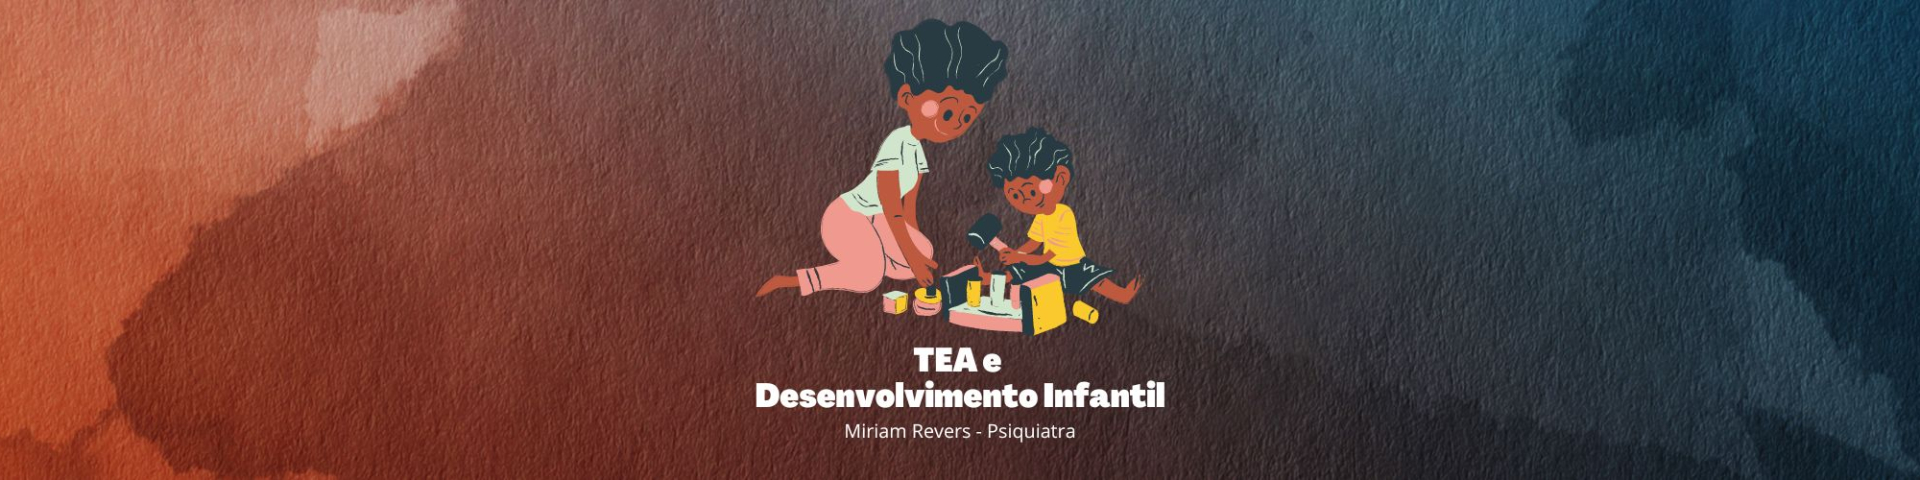 TEA e Desenvolvimento Infantil